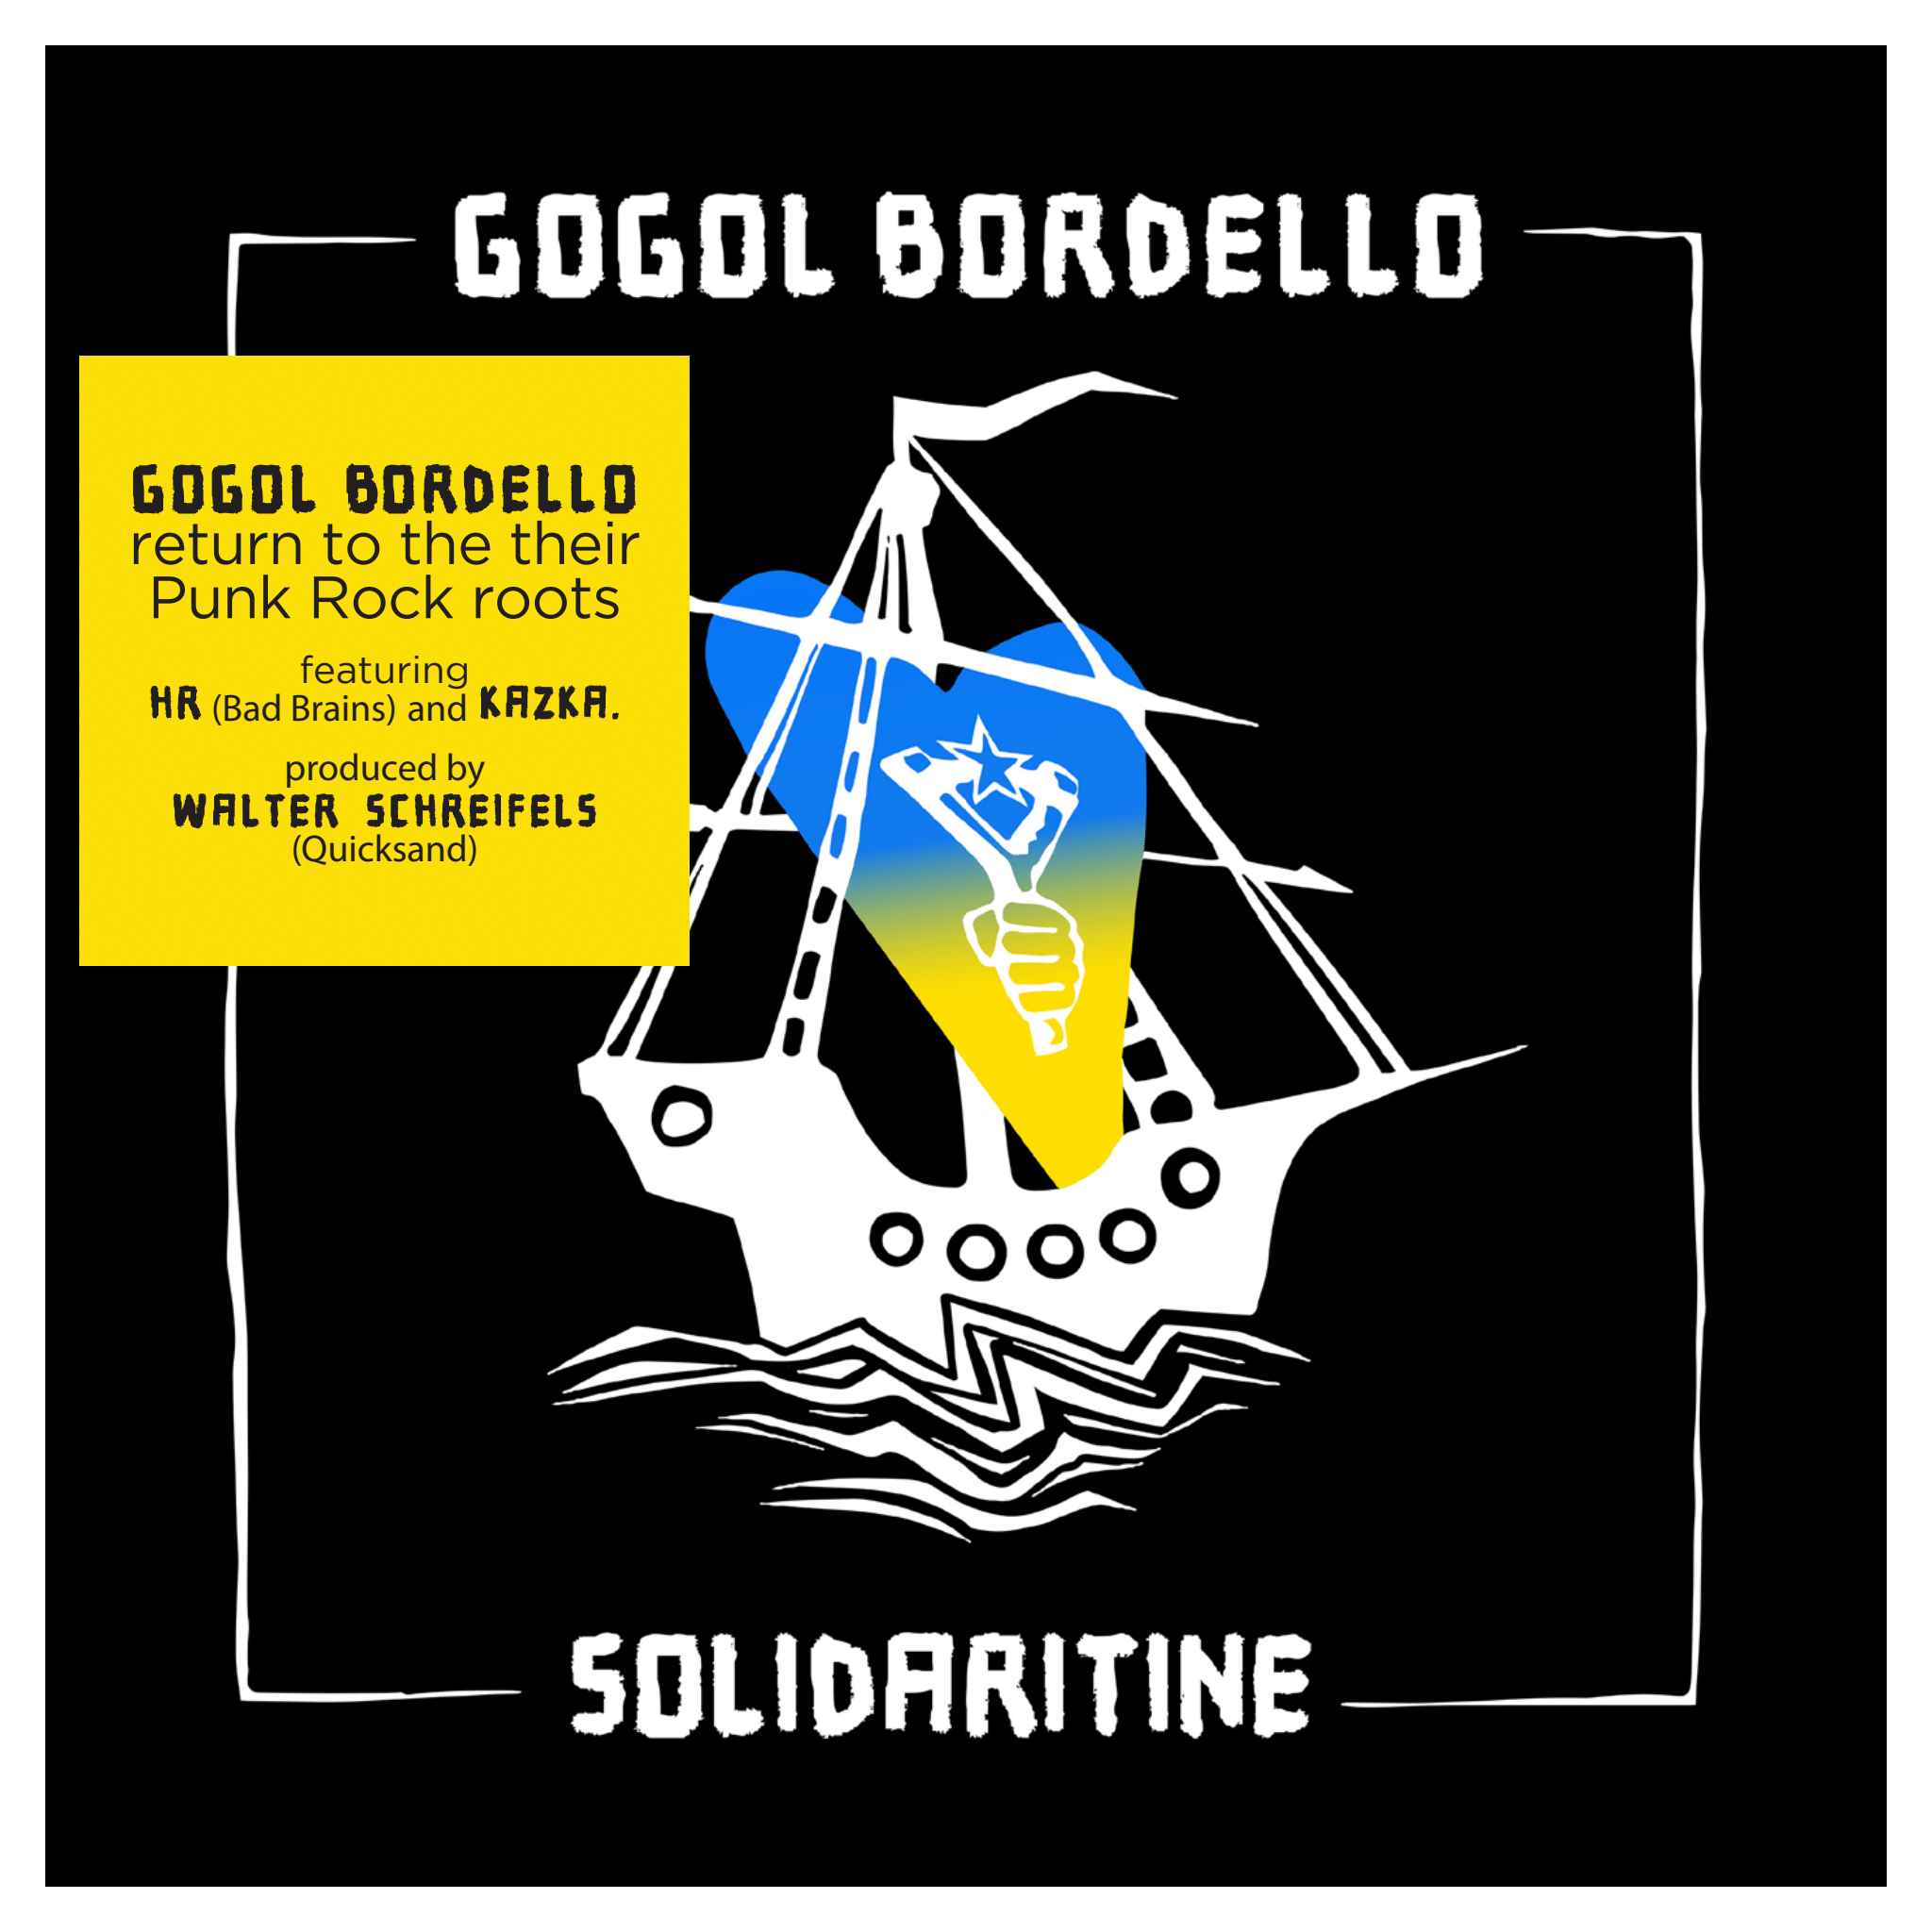 Gogol Bordello - Solidaritine (Yellow vinyl)